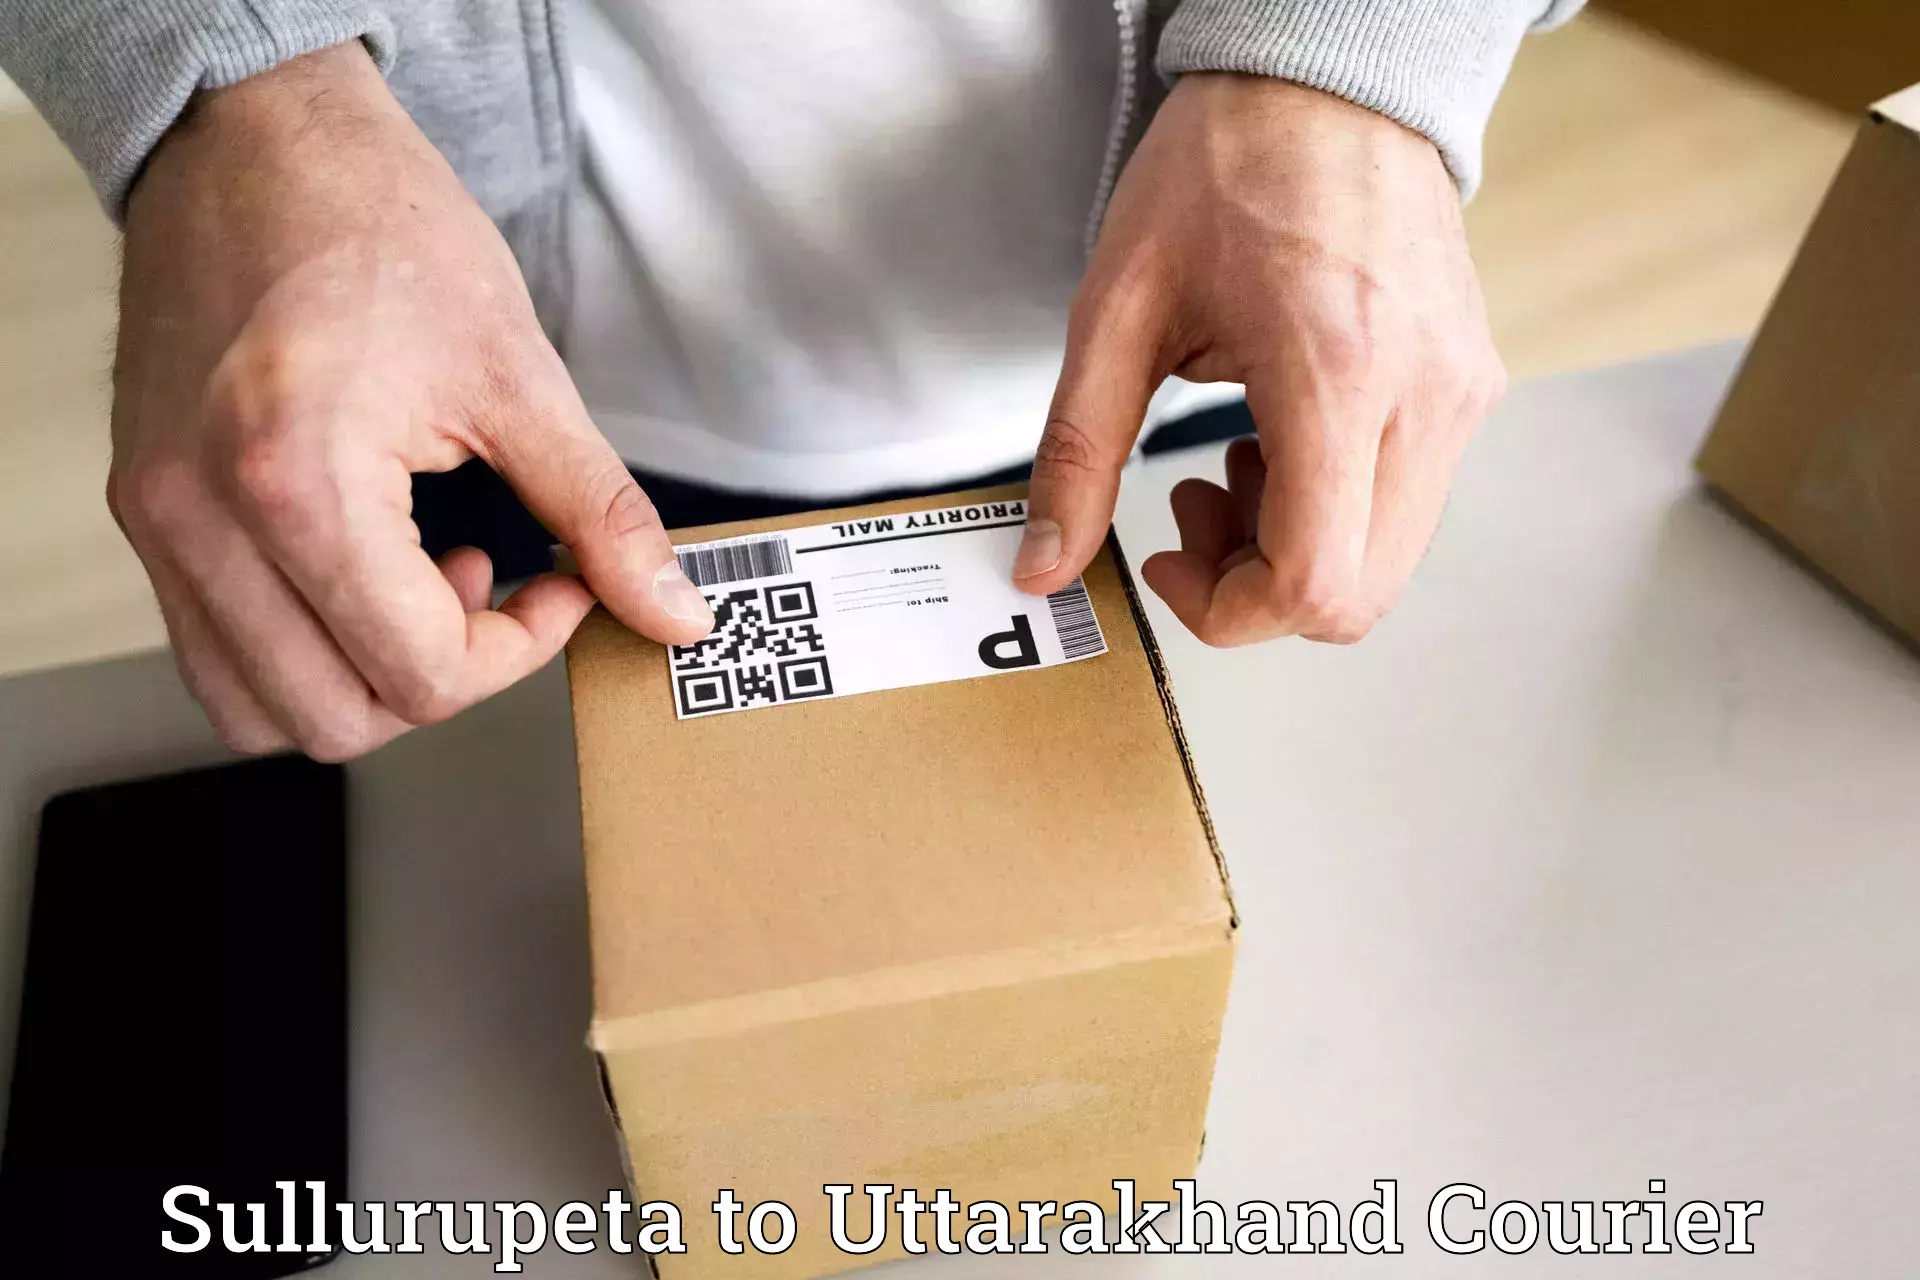 Courier service innovation Sullurupeta to Someshwar